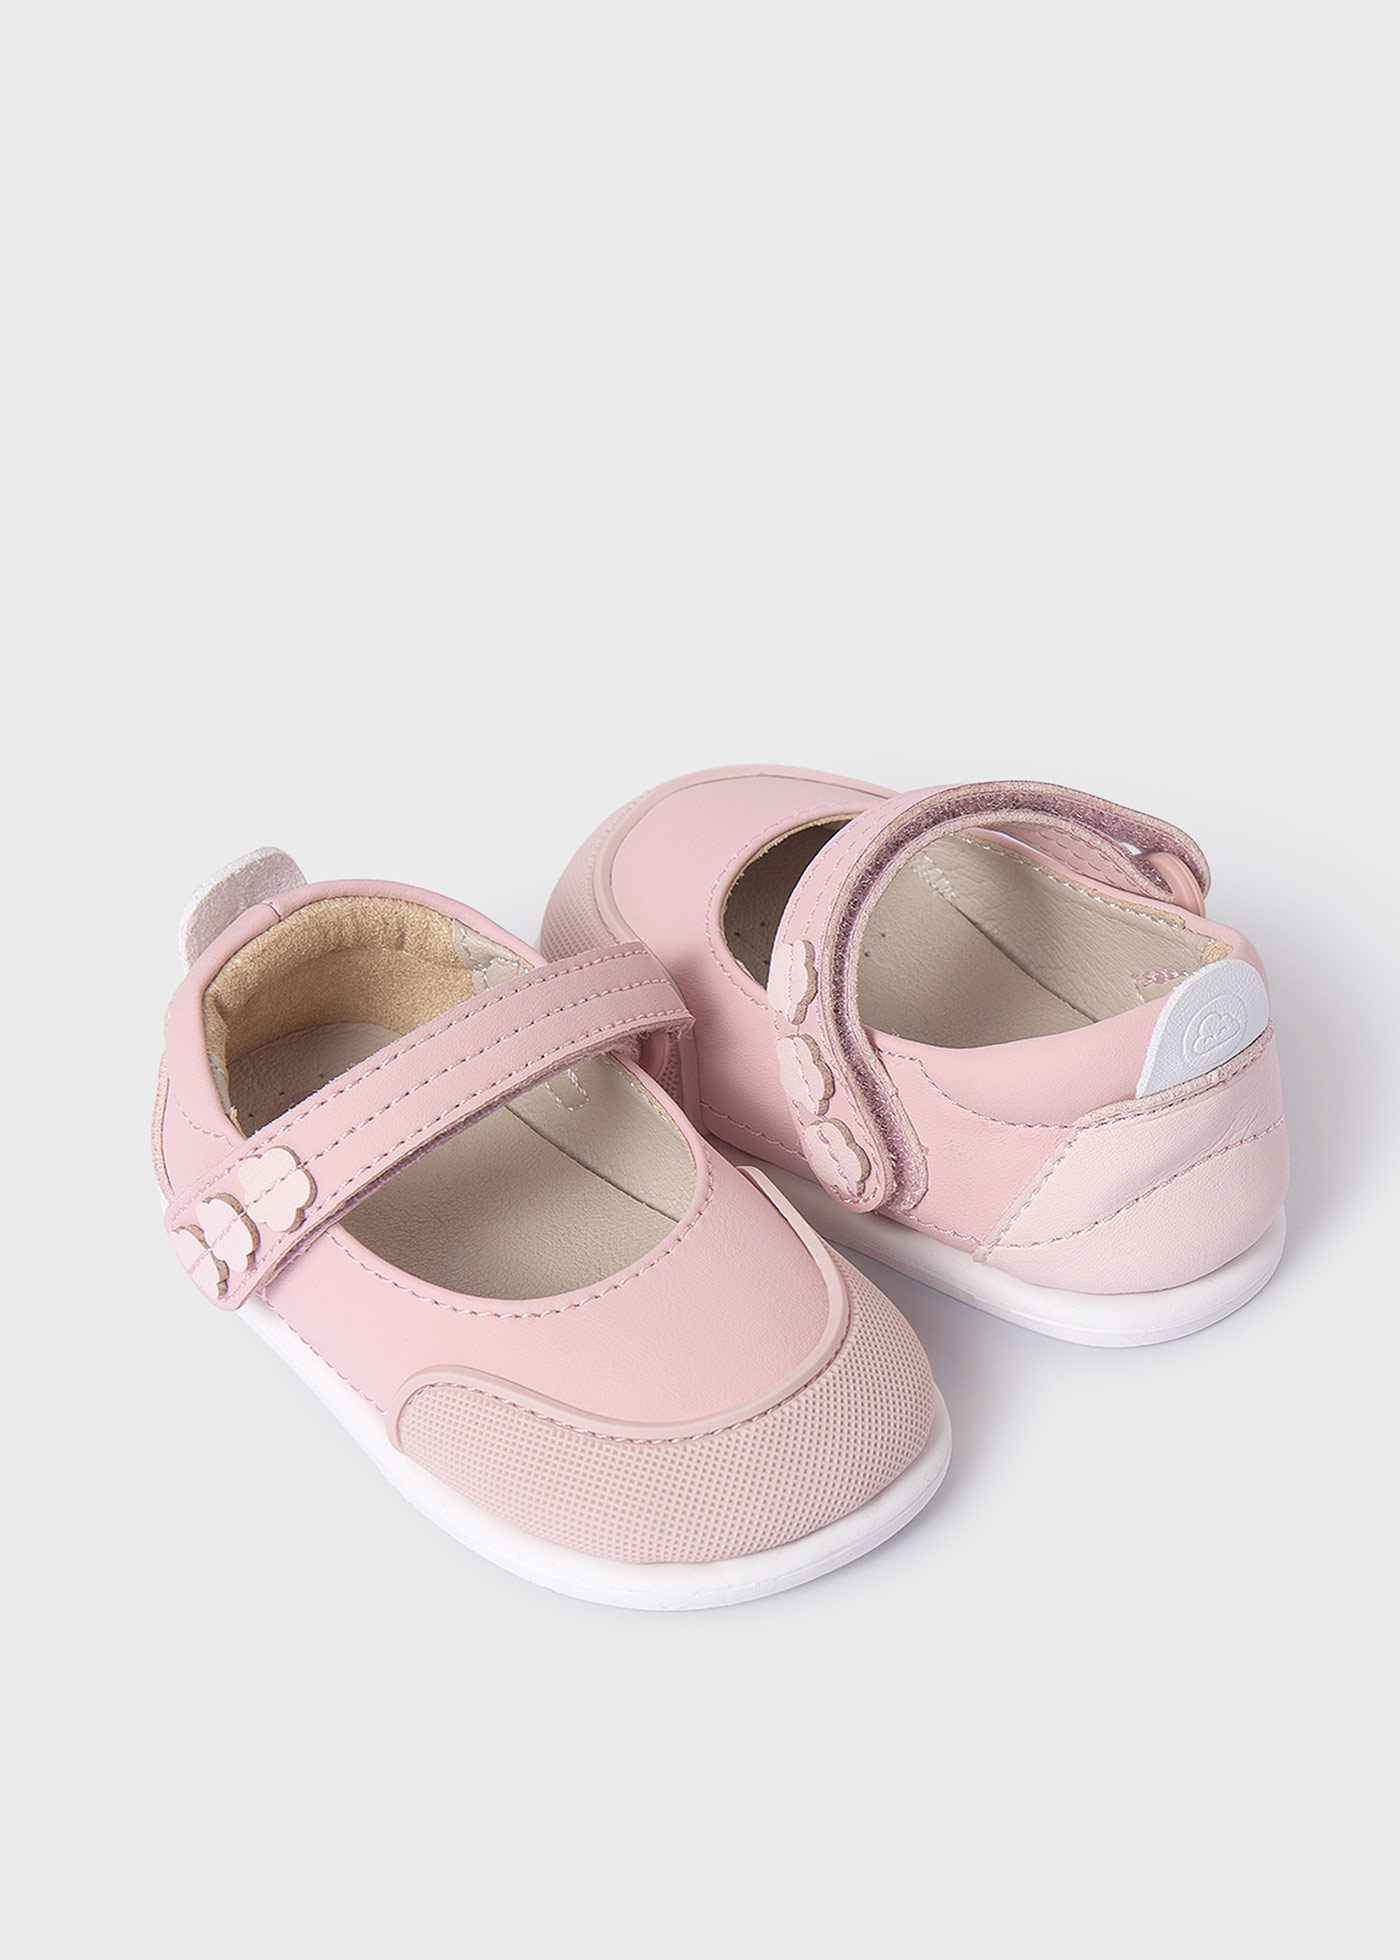 Zapatos respetuosa bebé